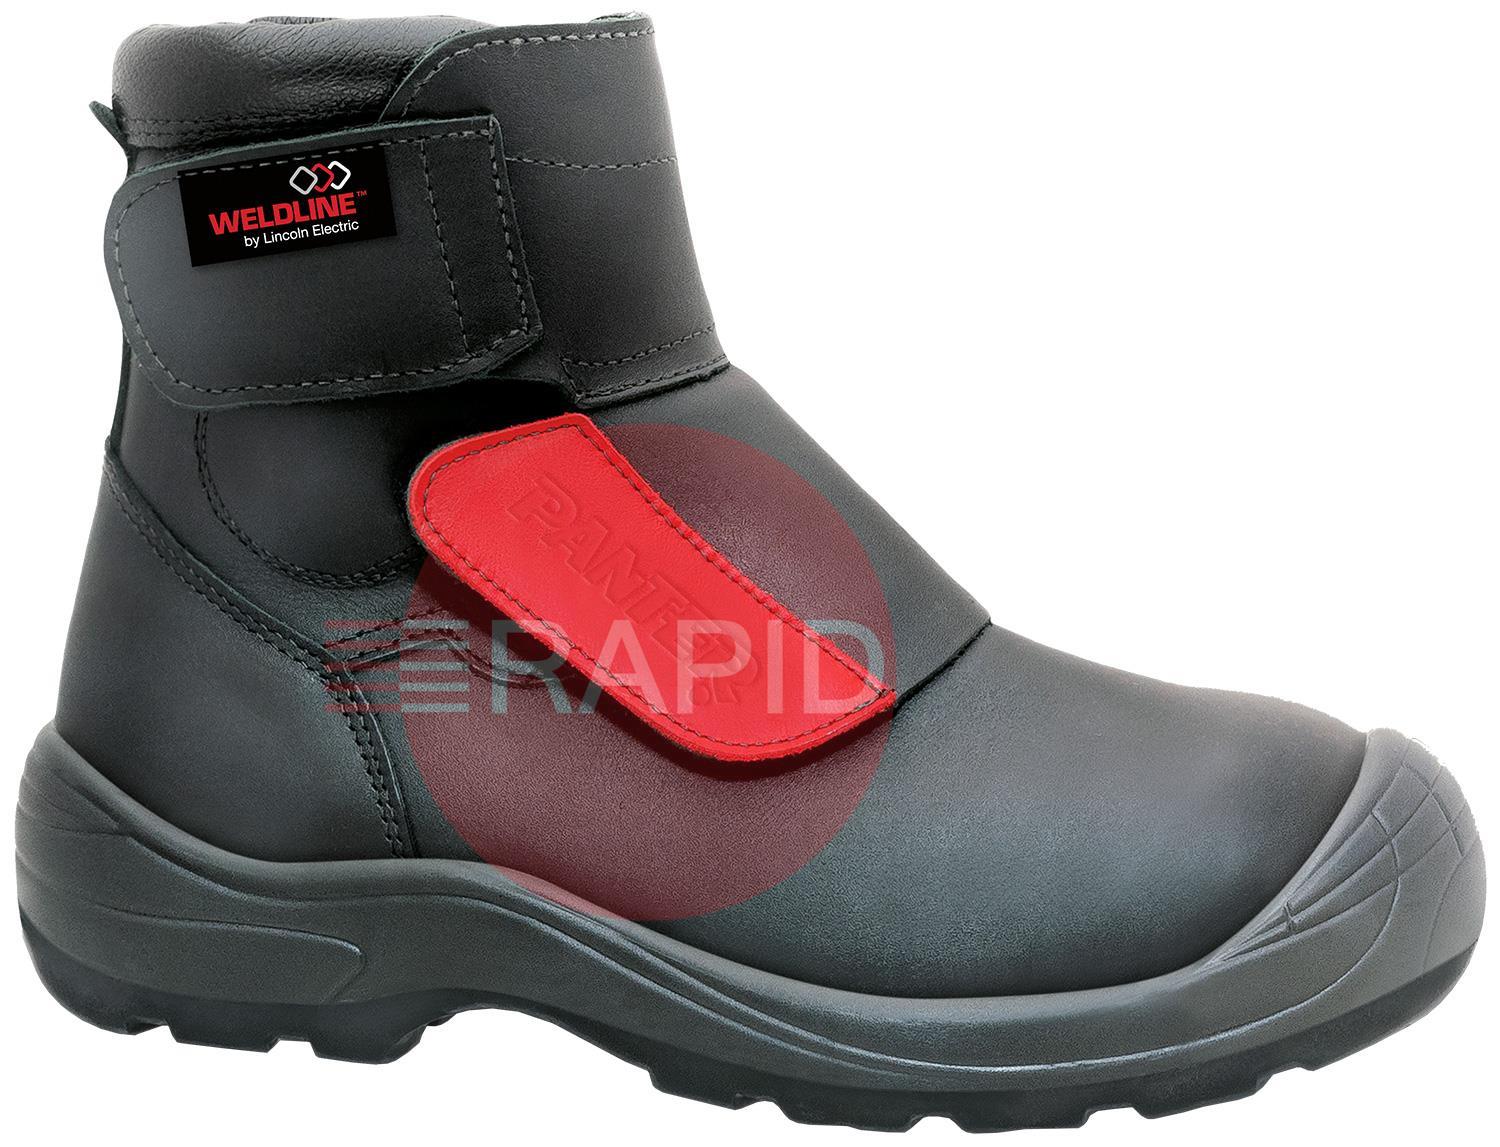 W49S3T45  Weldline Panter Fusion 49 S3 Welding Shoes - Size 45